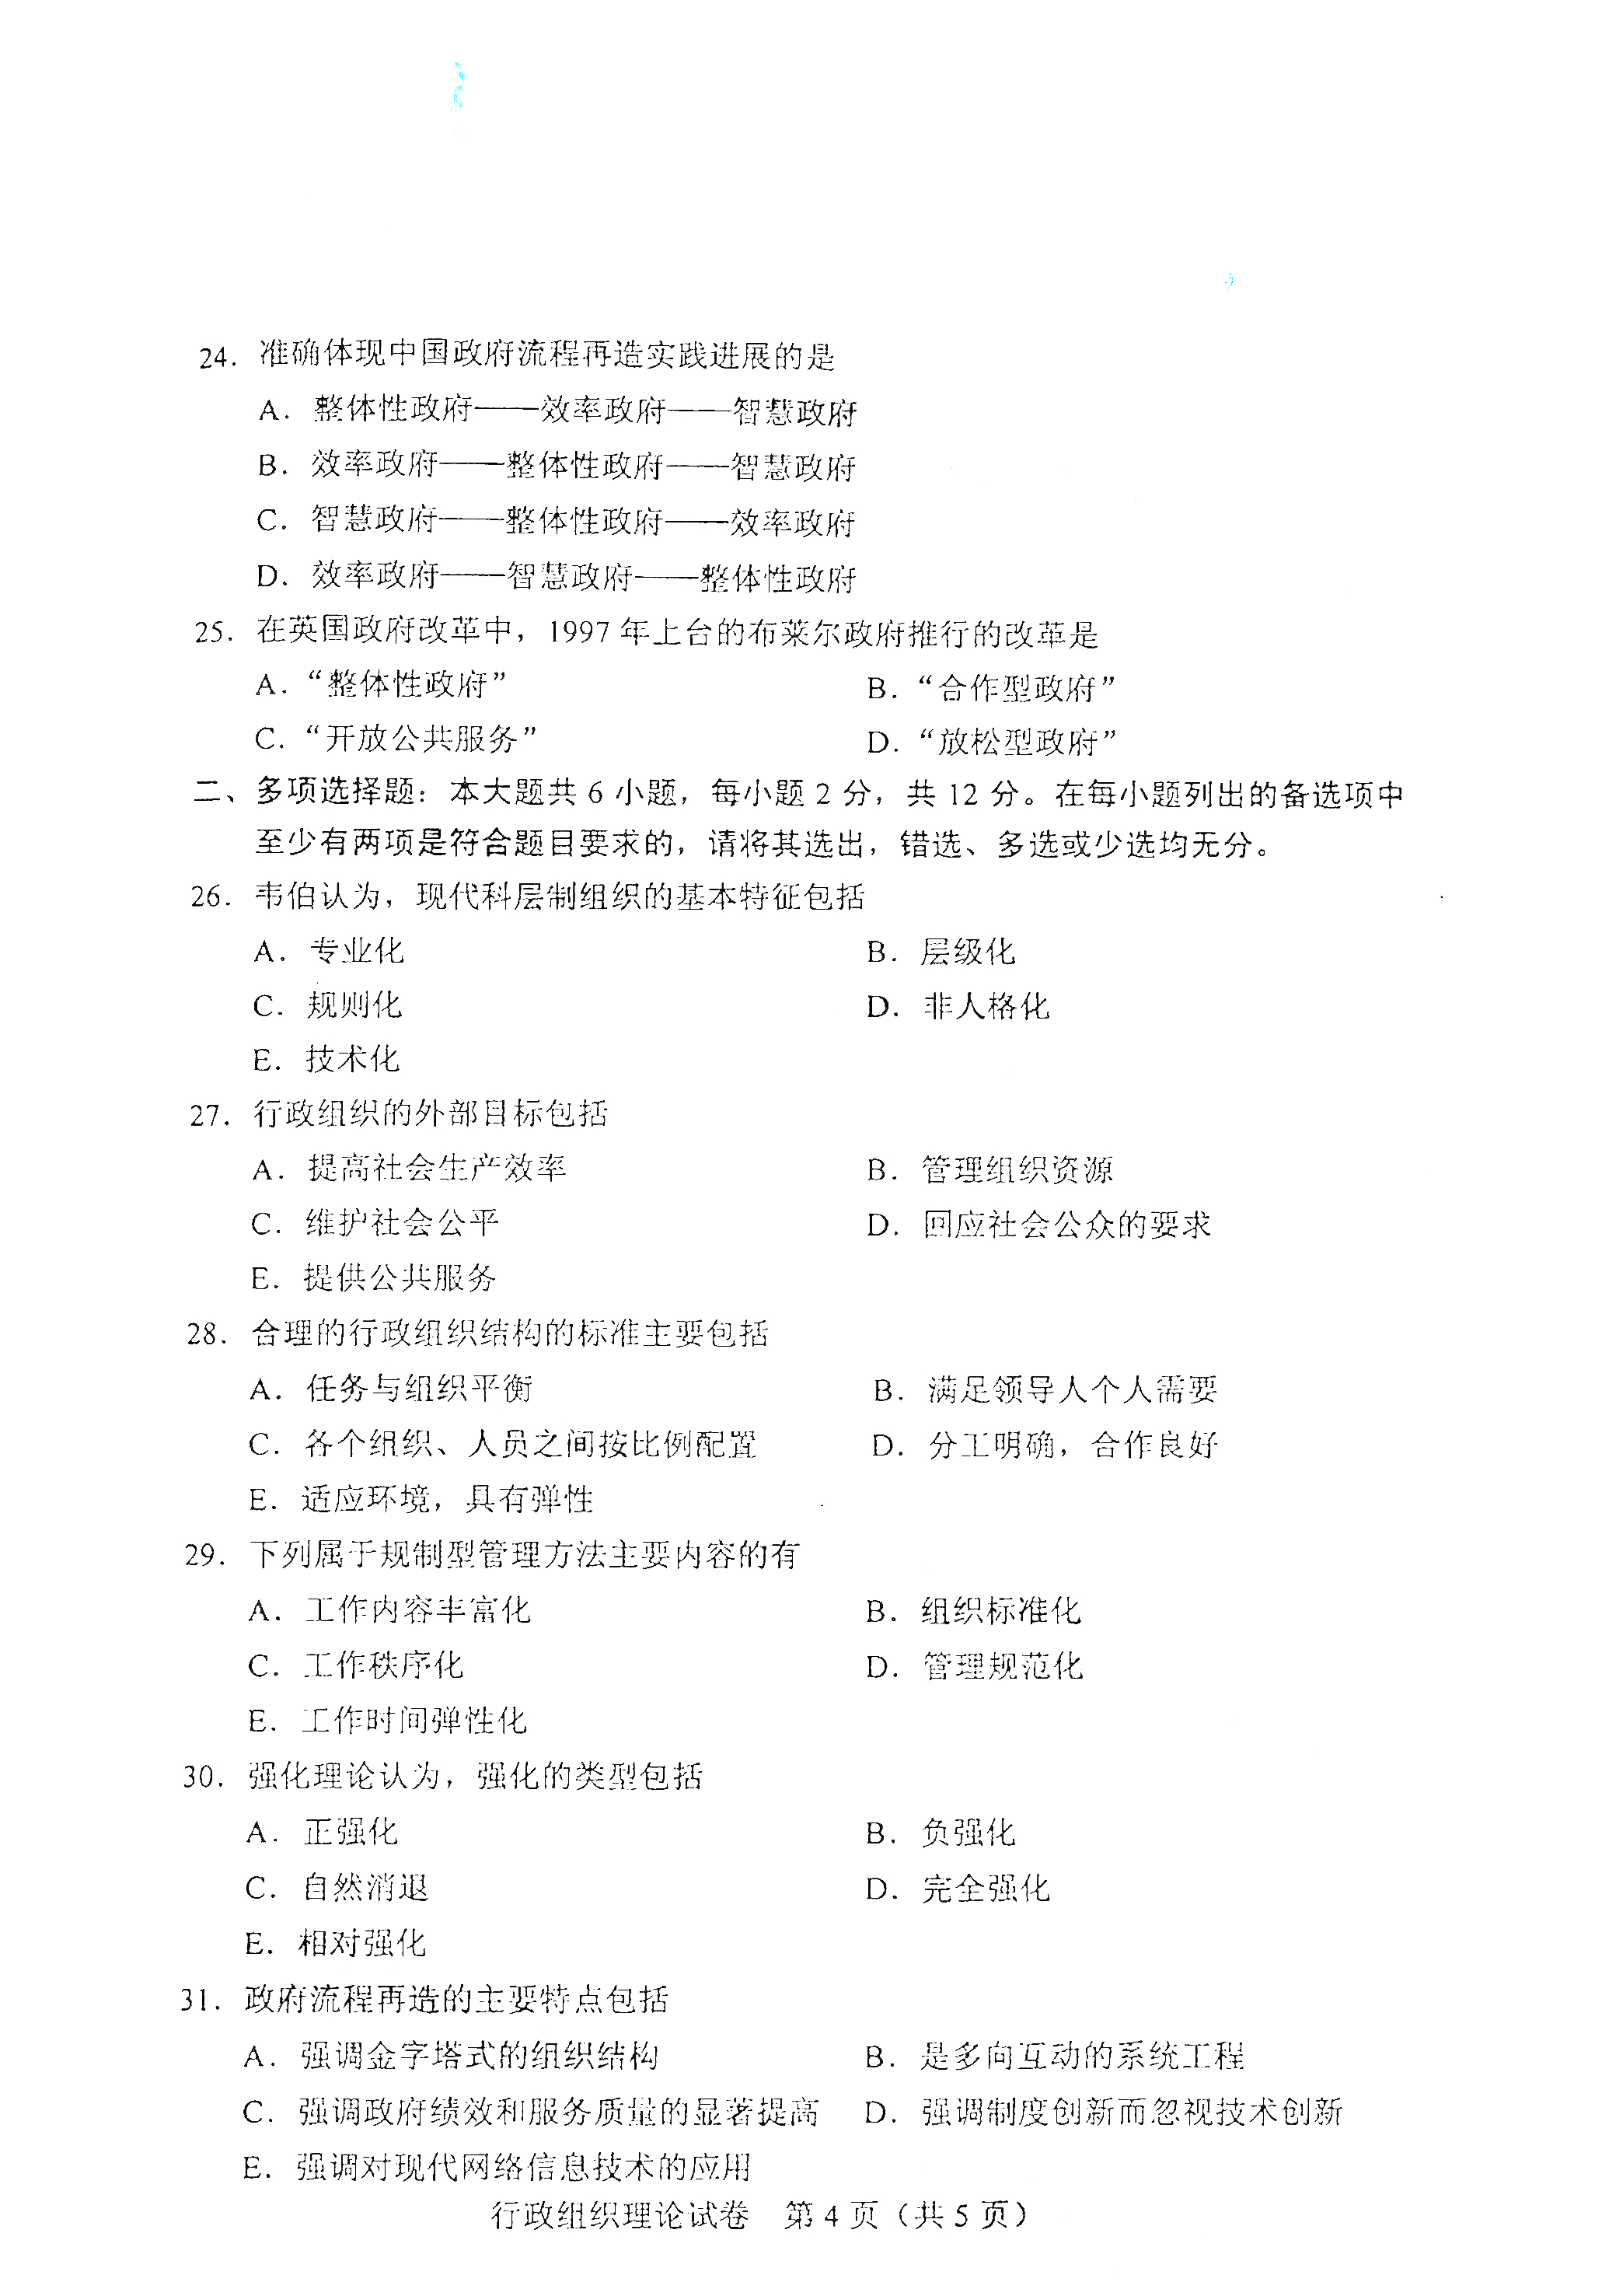 重庆自考2021年4月自考00319行政组织理论真题试卷